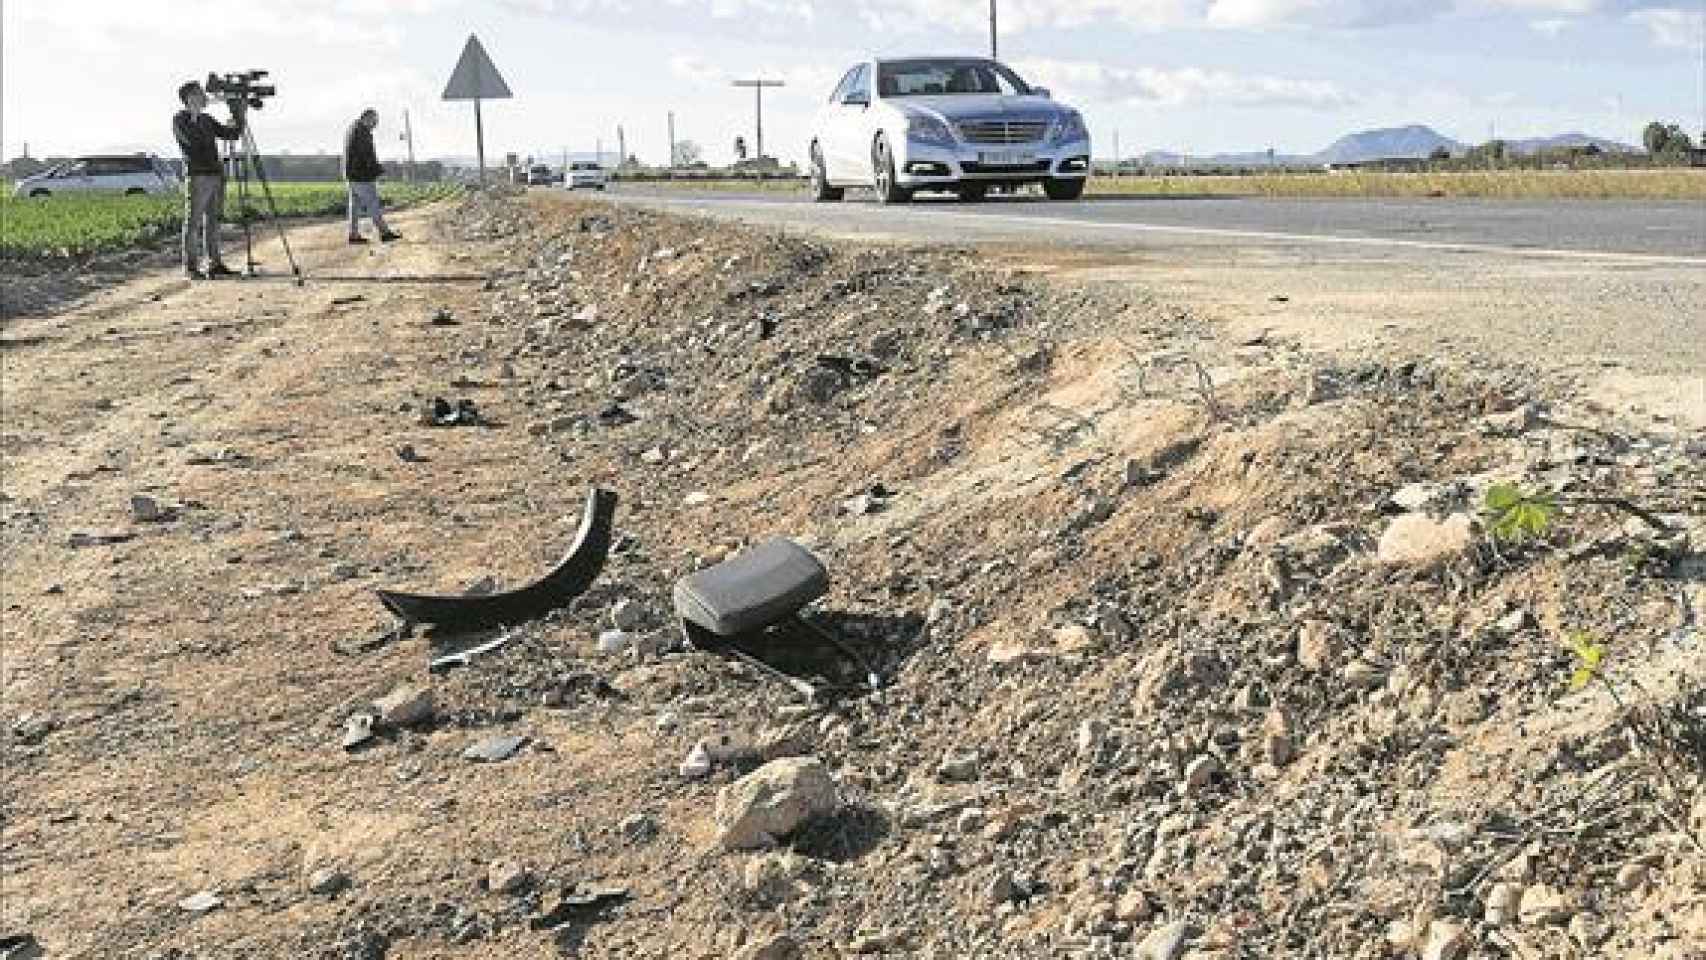 Los restos de los vehículos todavía permanecen en la carretera varios días después.